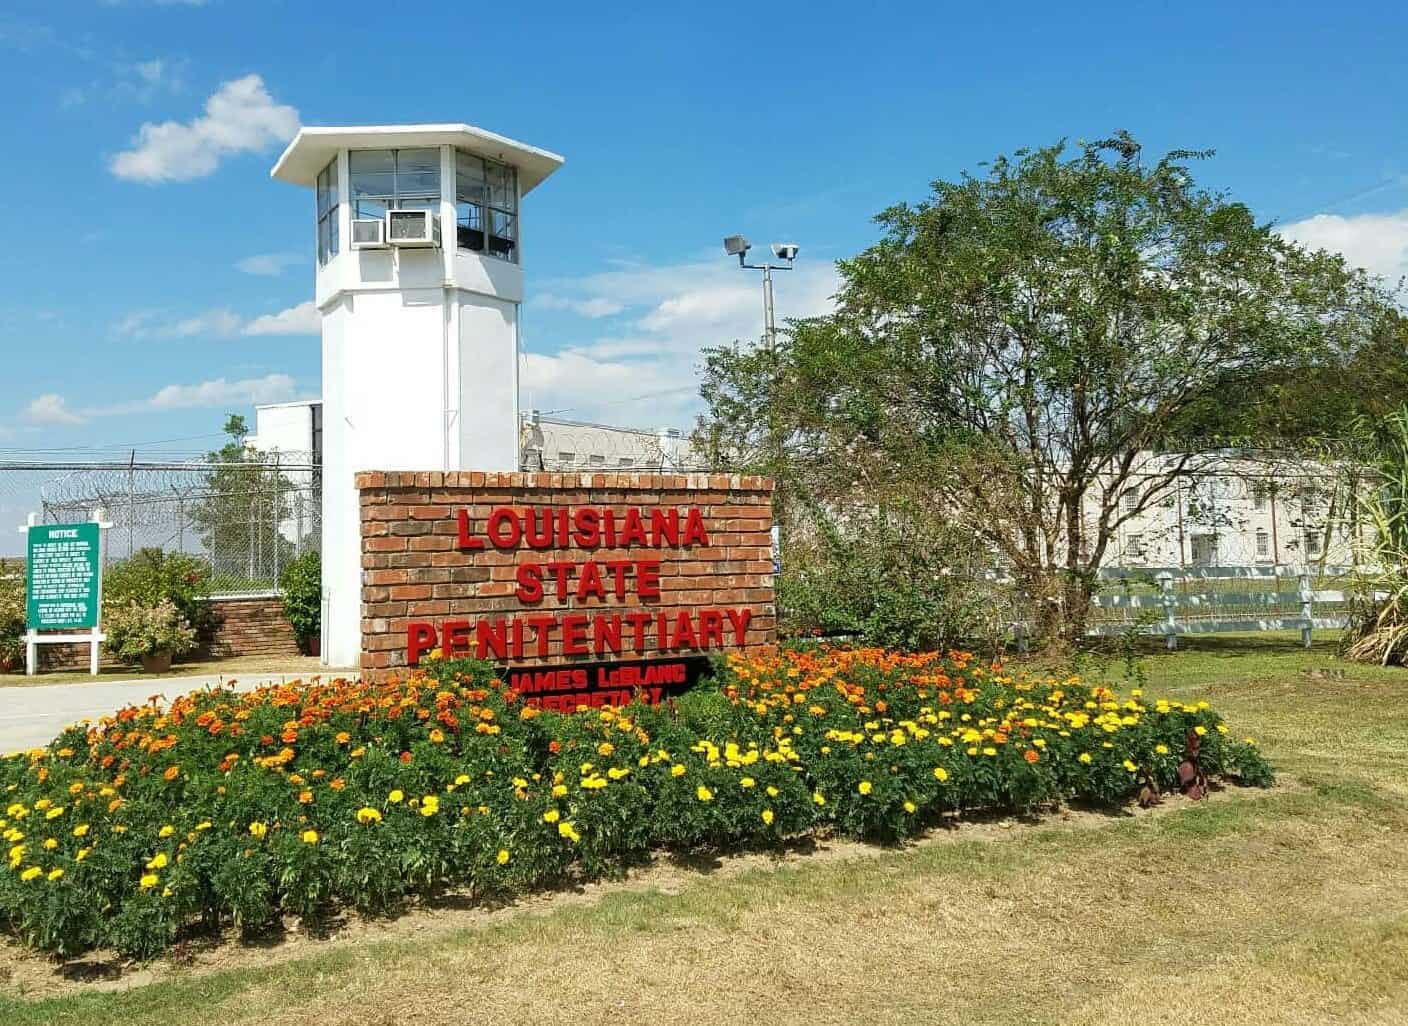 Angola State Prison In Louisiana 